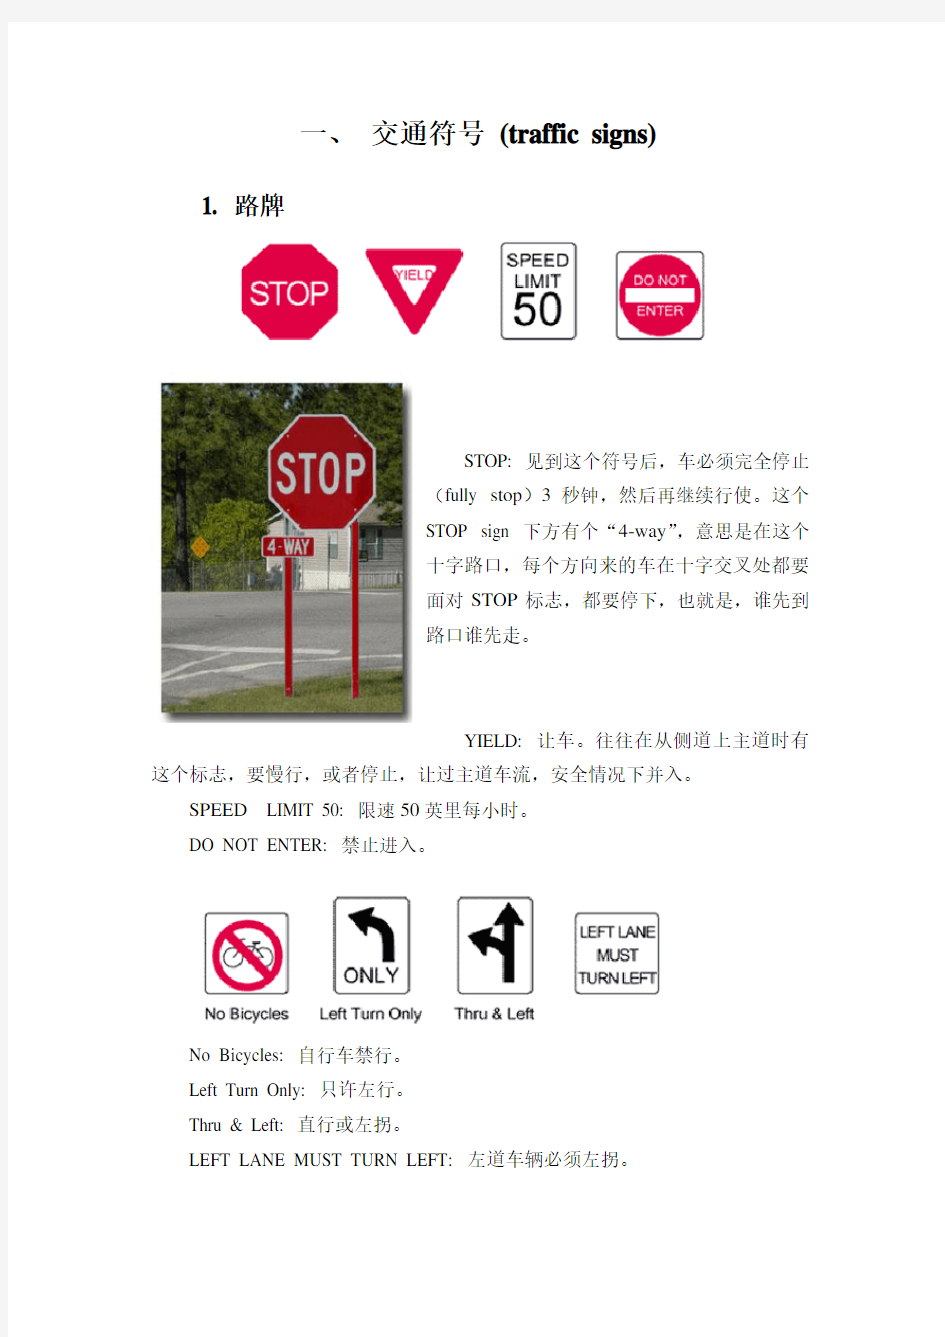 美国所有交通标志的中文解释